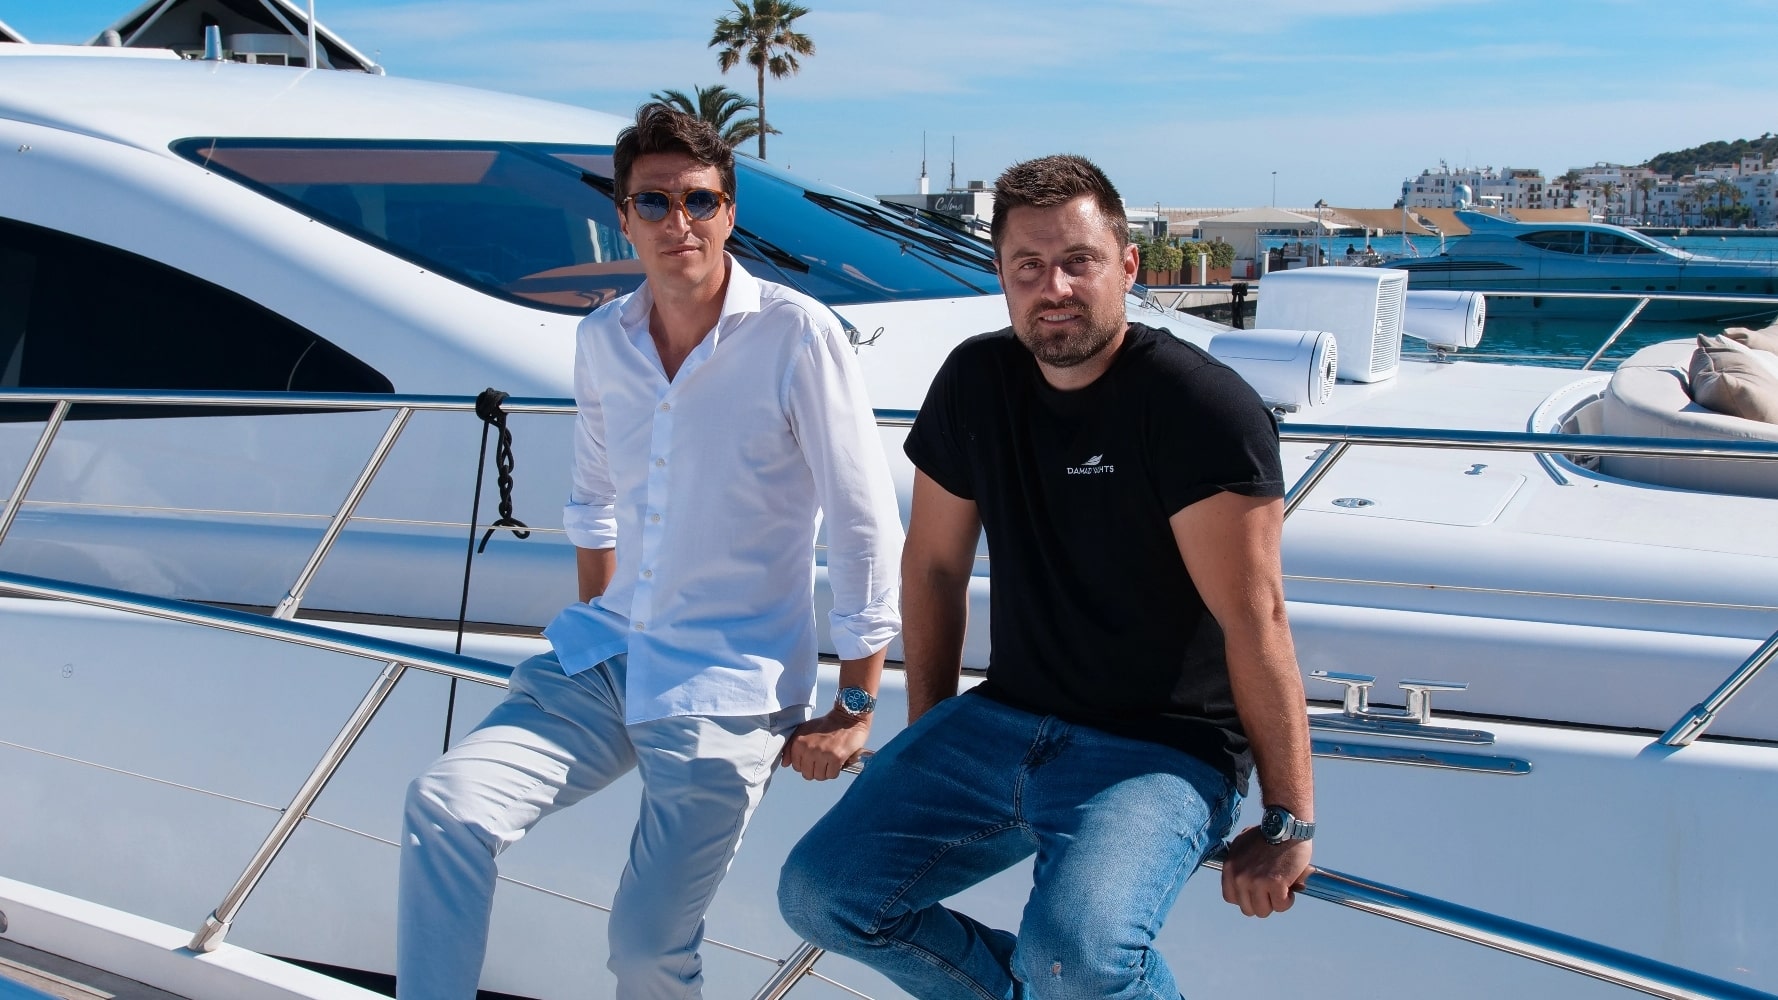  Alquiler y Gestión de yates en Ibiza - Dama Yachts | Yacht rental and management in Ibiza - Dama Yachts